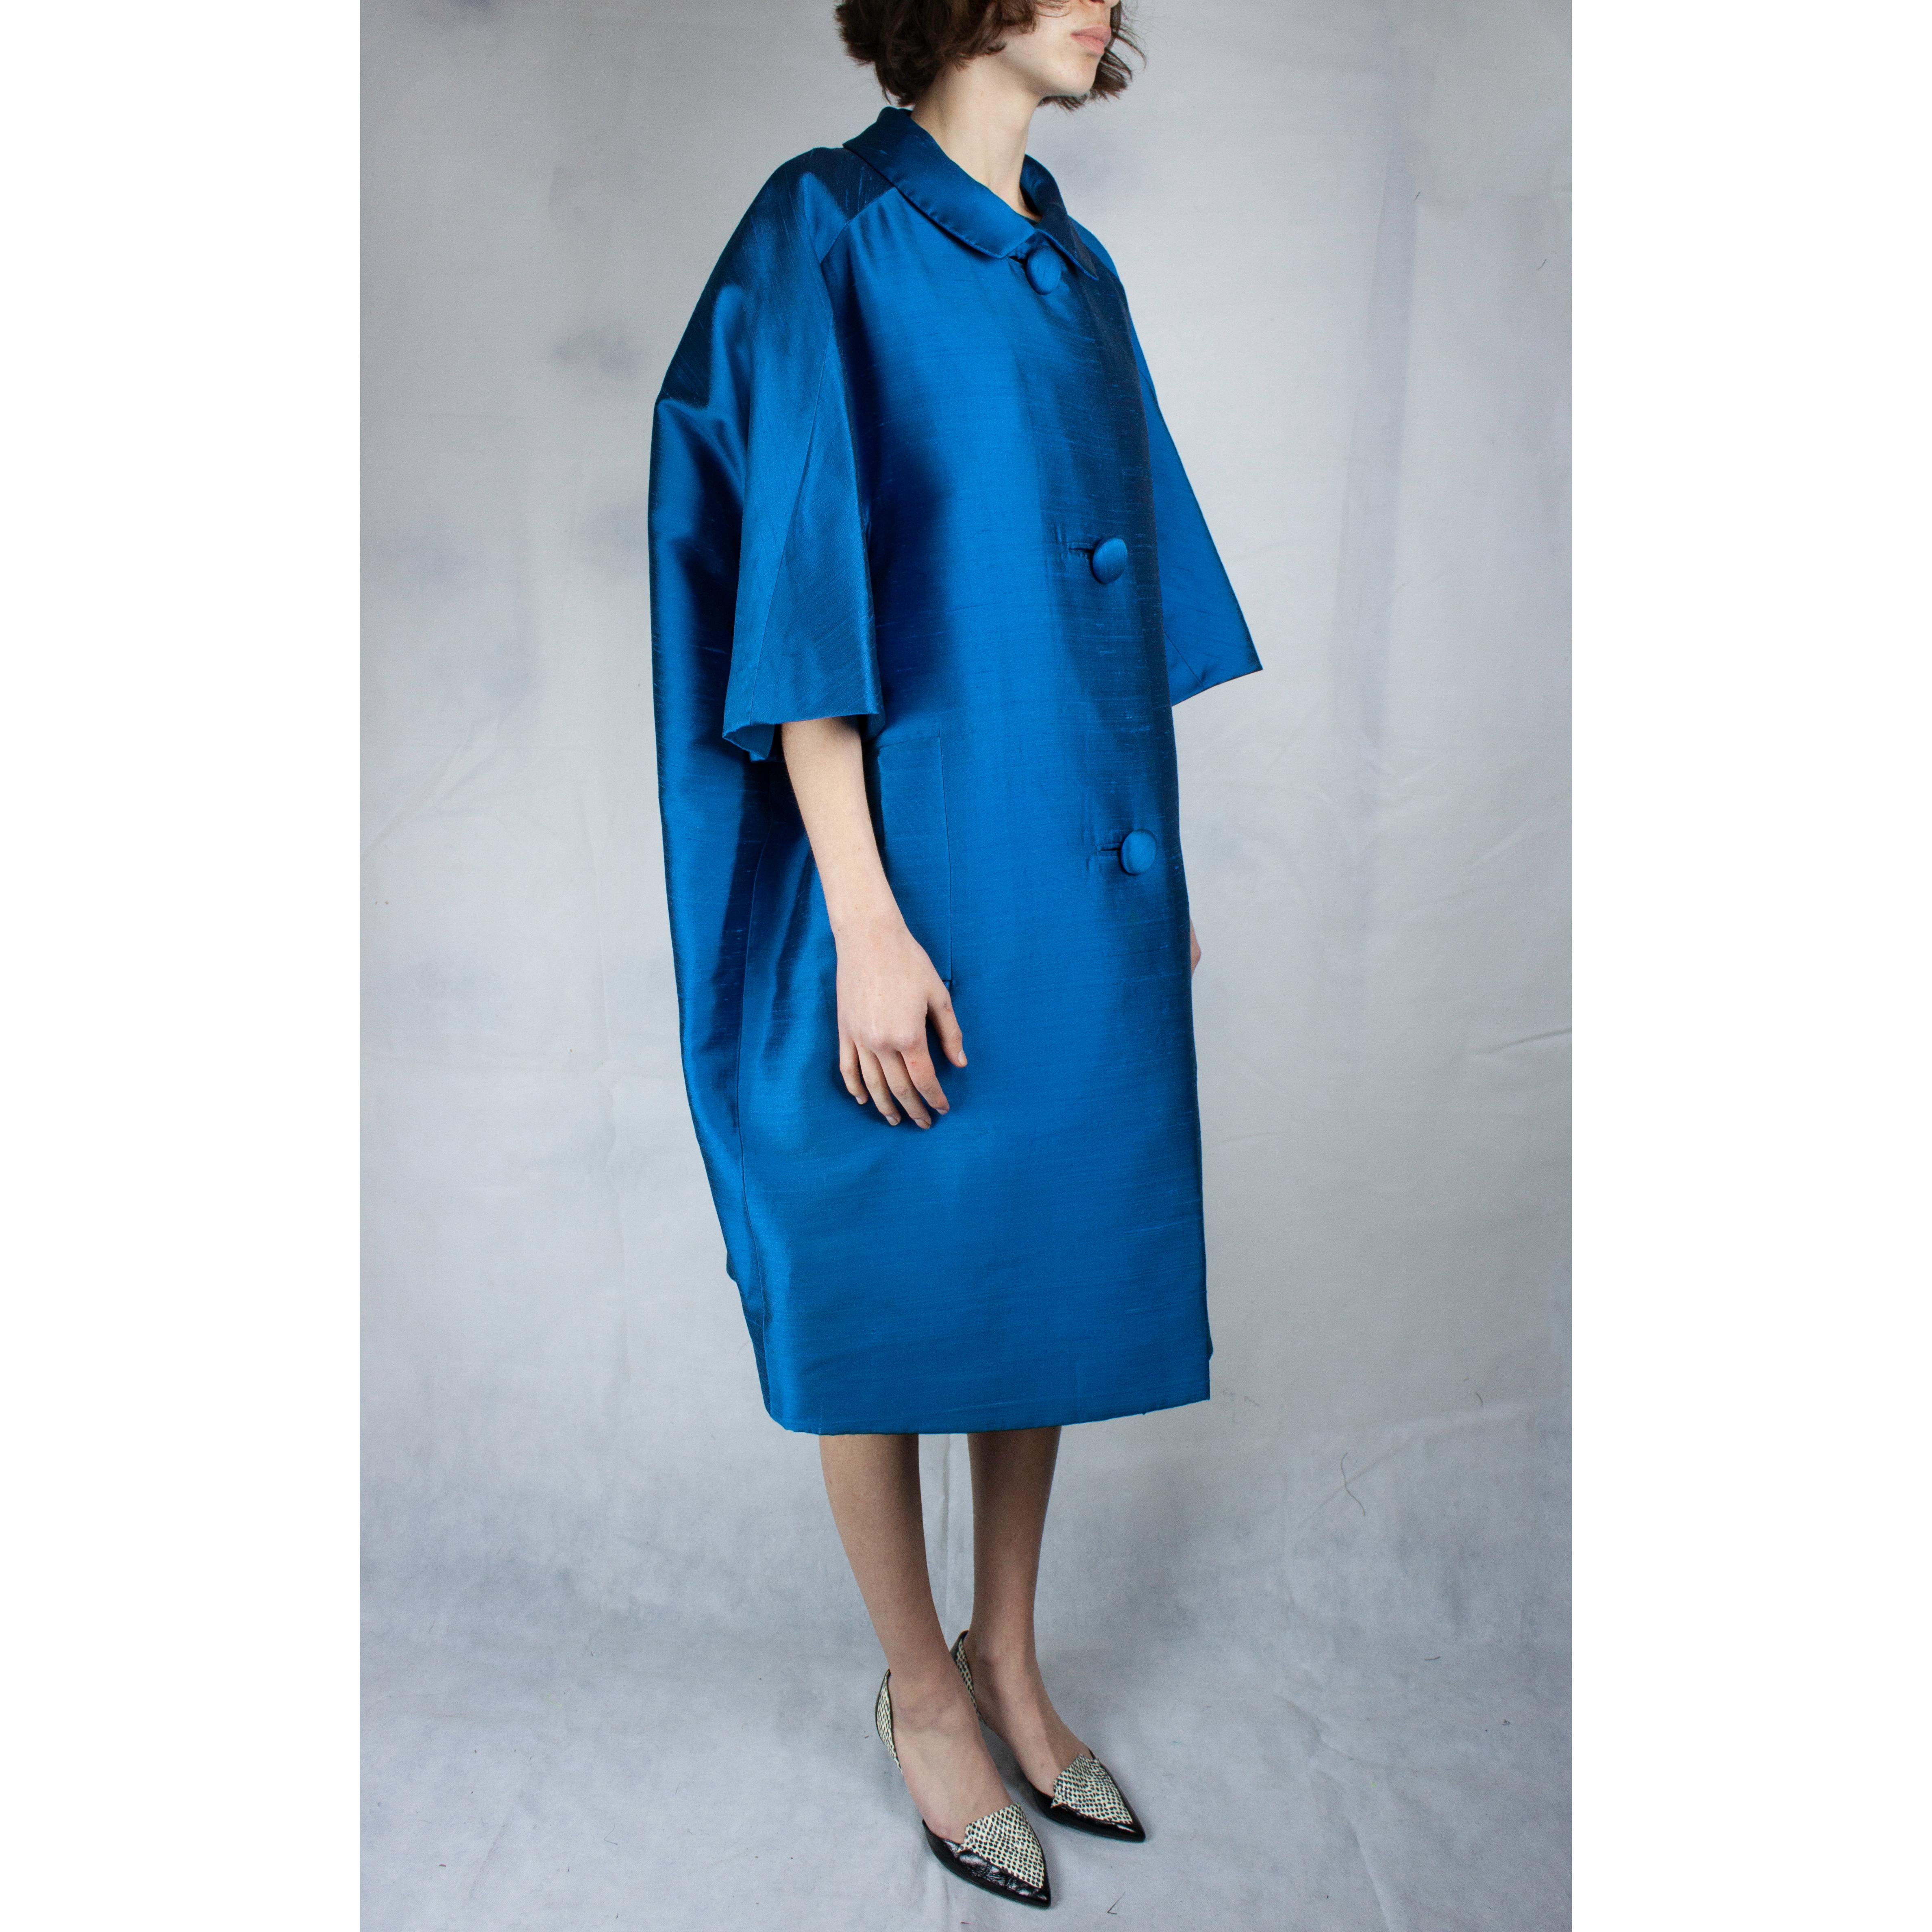 Rare Christian Dior cocoon coat and dress ensemble. circa 1958 at ...